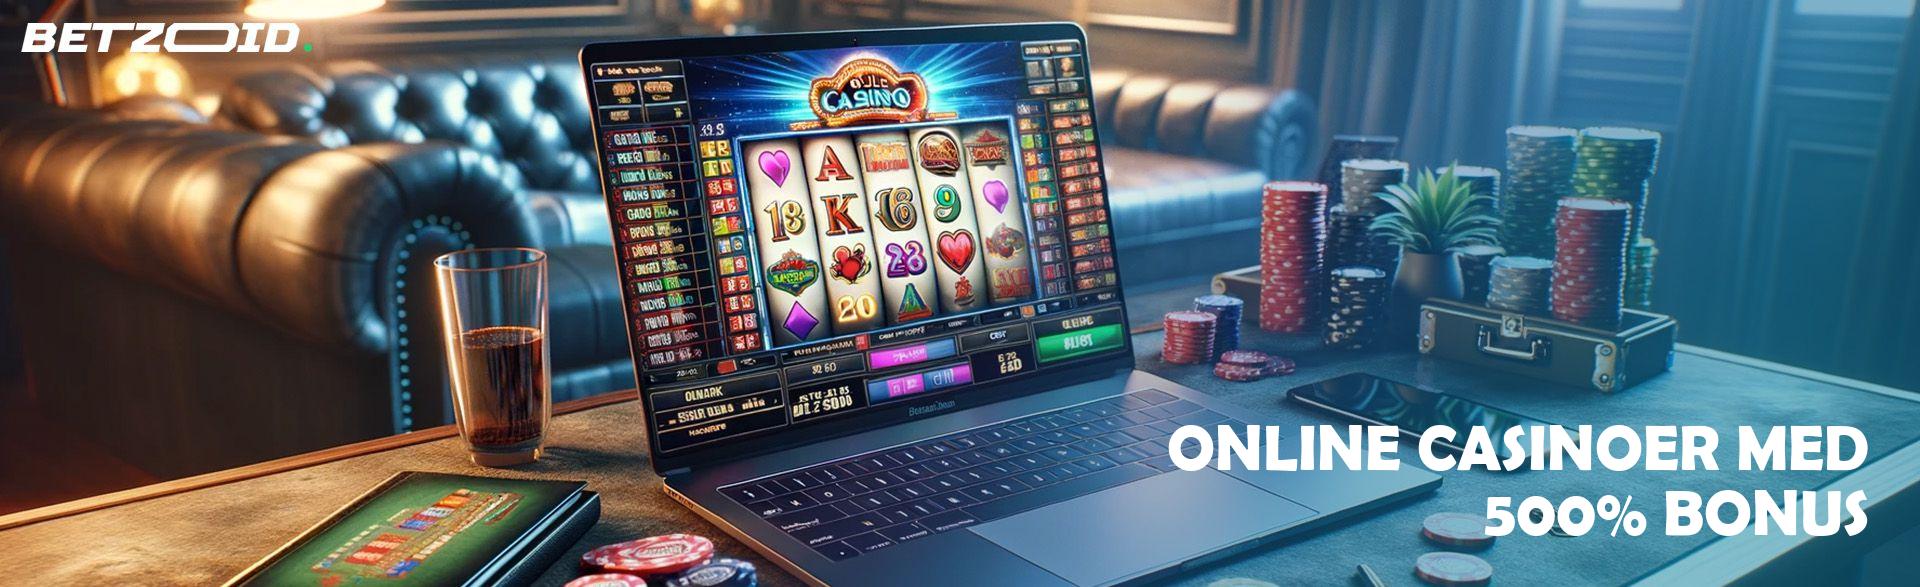 Online Casinoer med 500% Bonus.